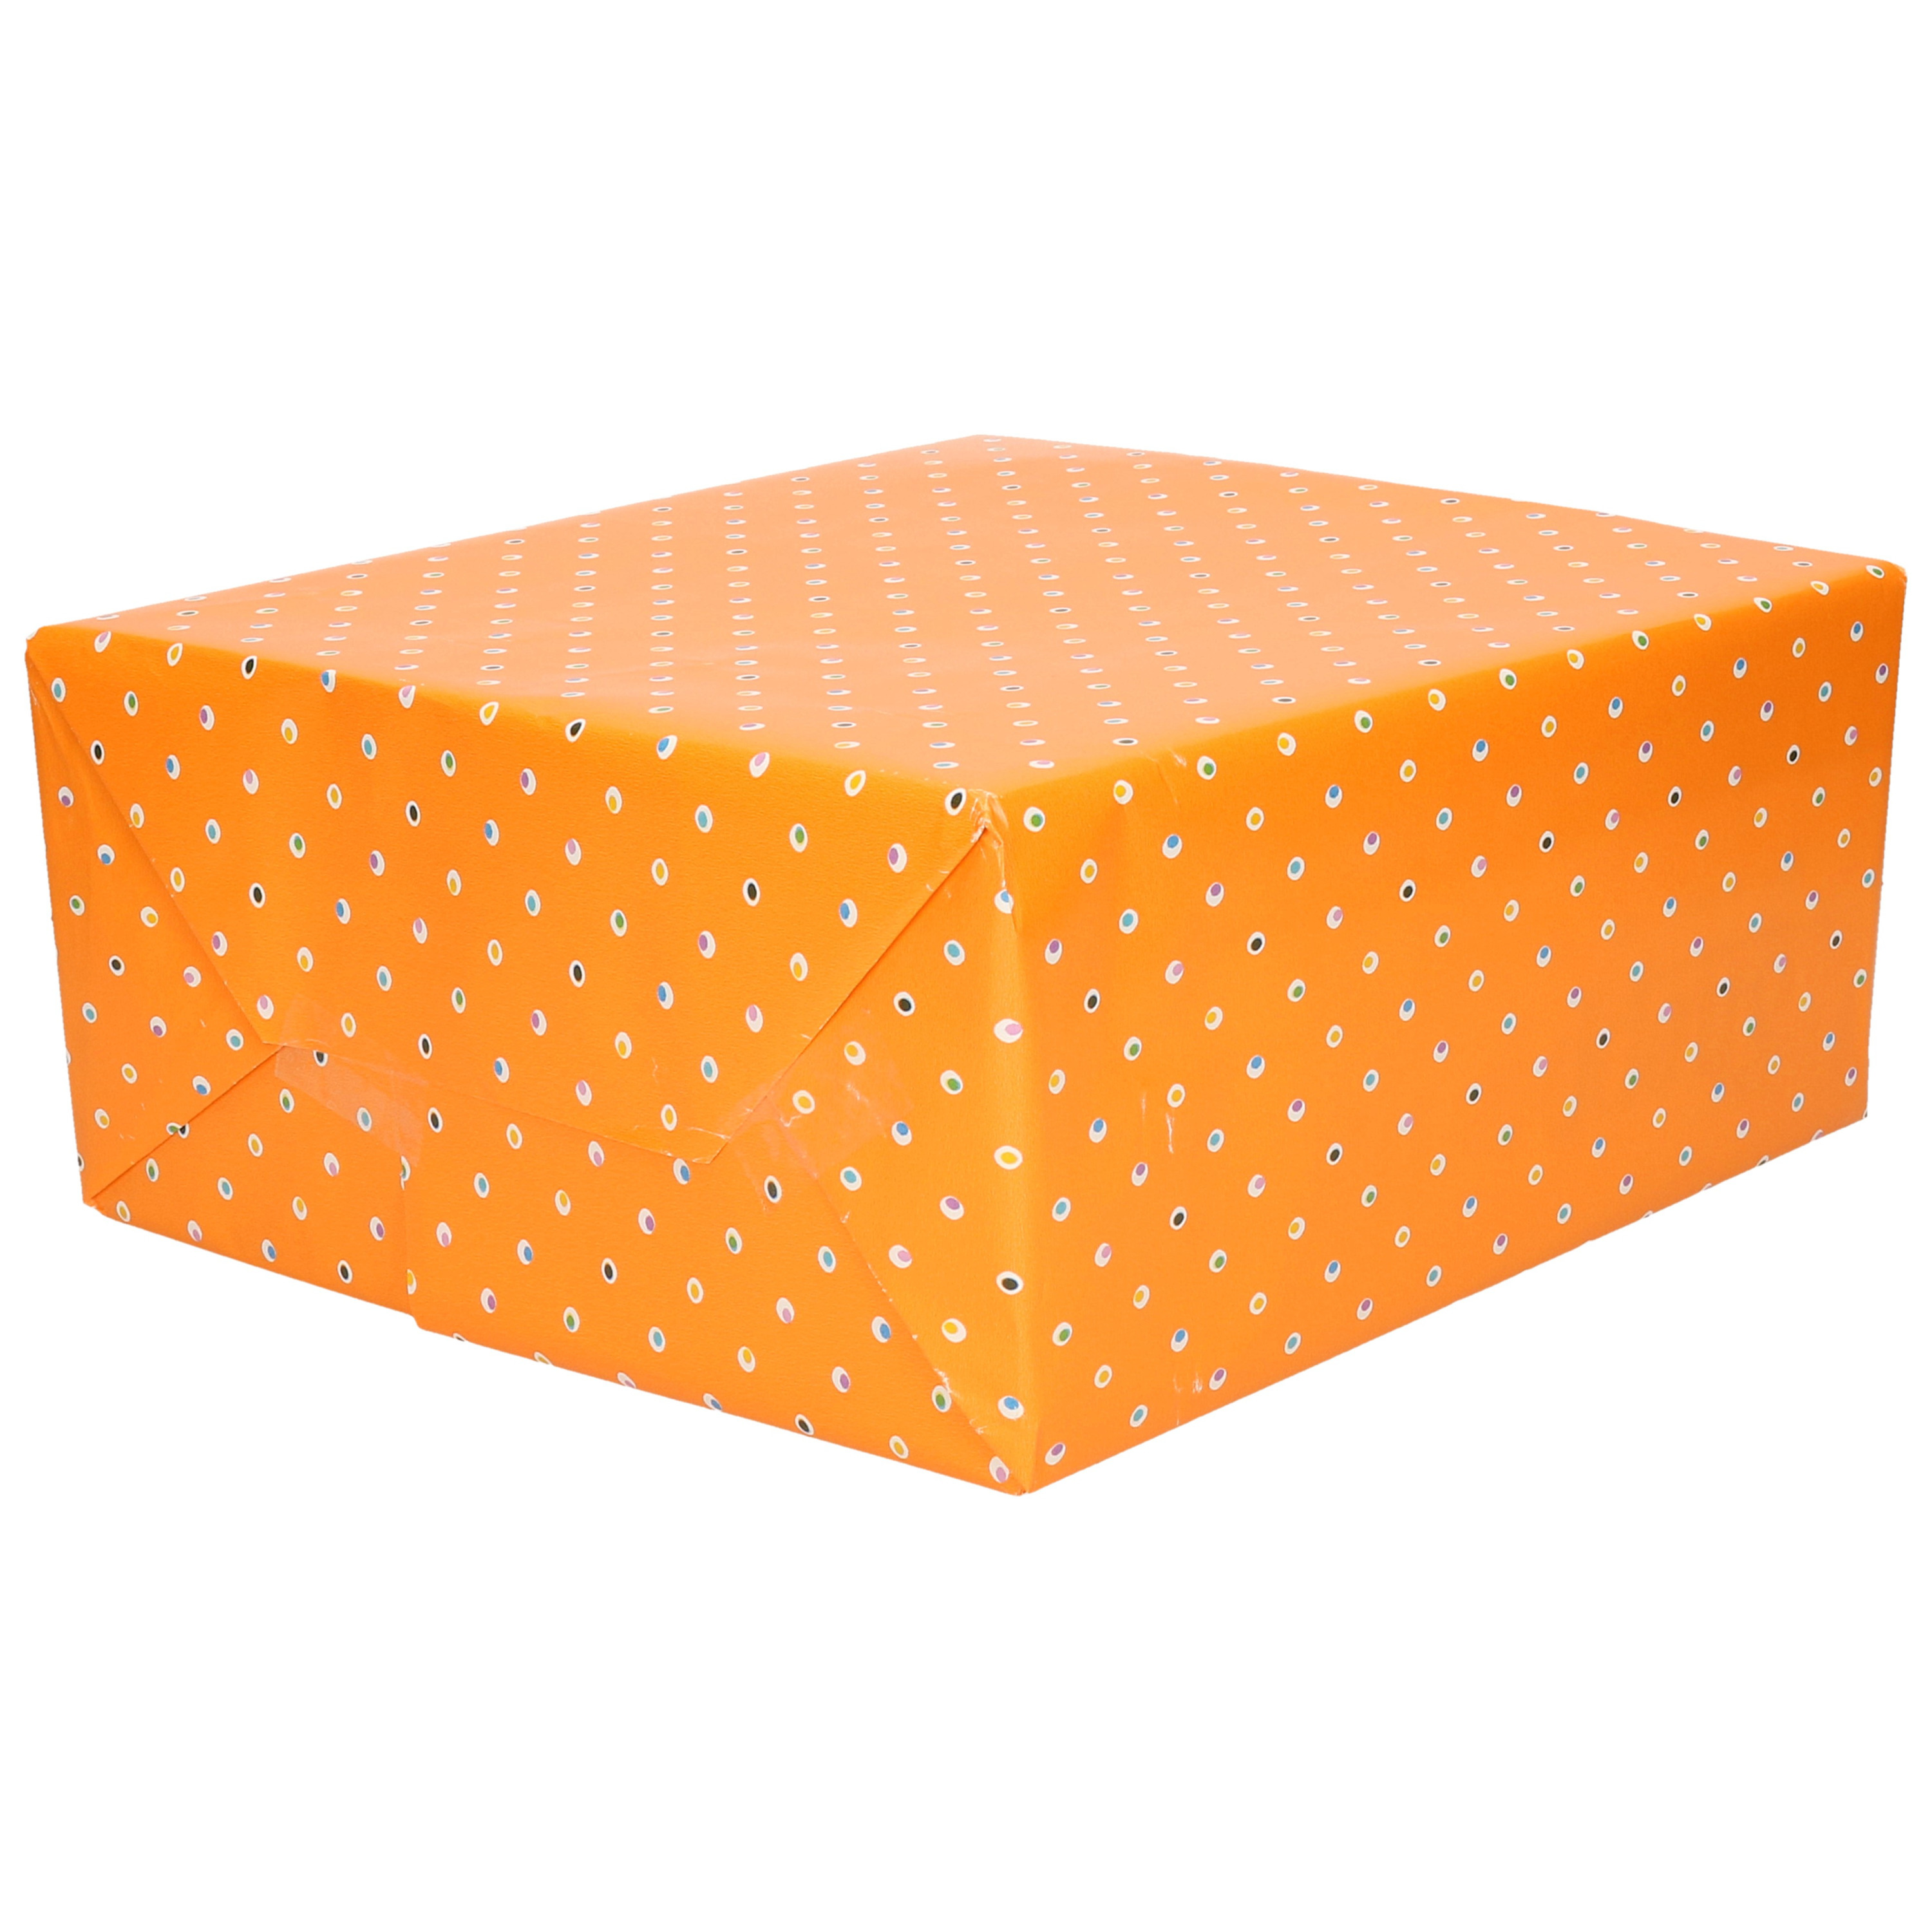 1x Inpakpapier/cadeaupapier oranje met gekleurde stippen motief 200 x 70 cm rol